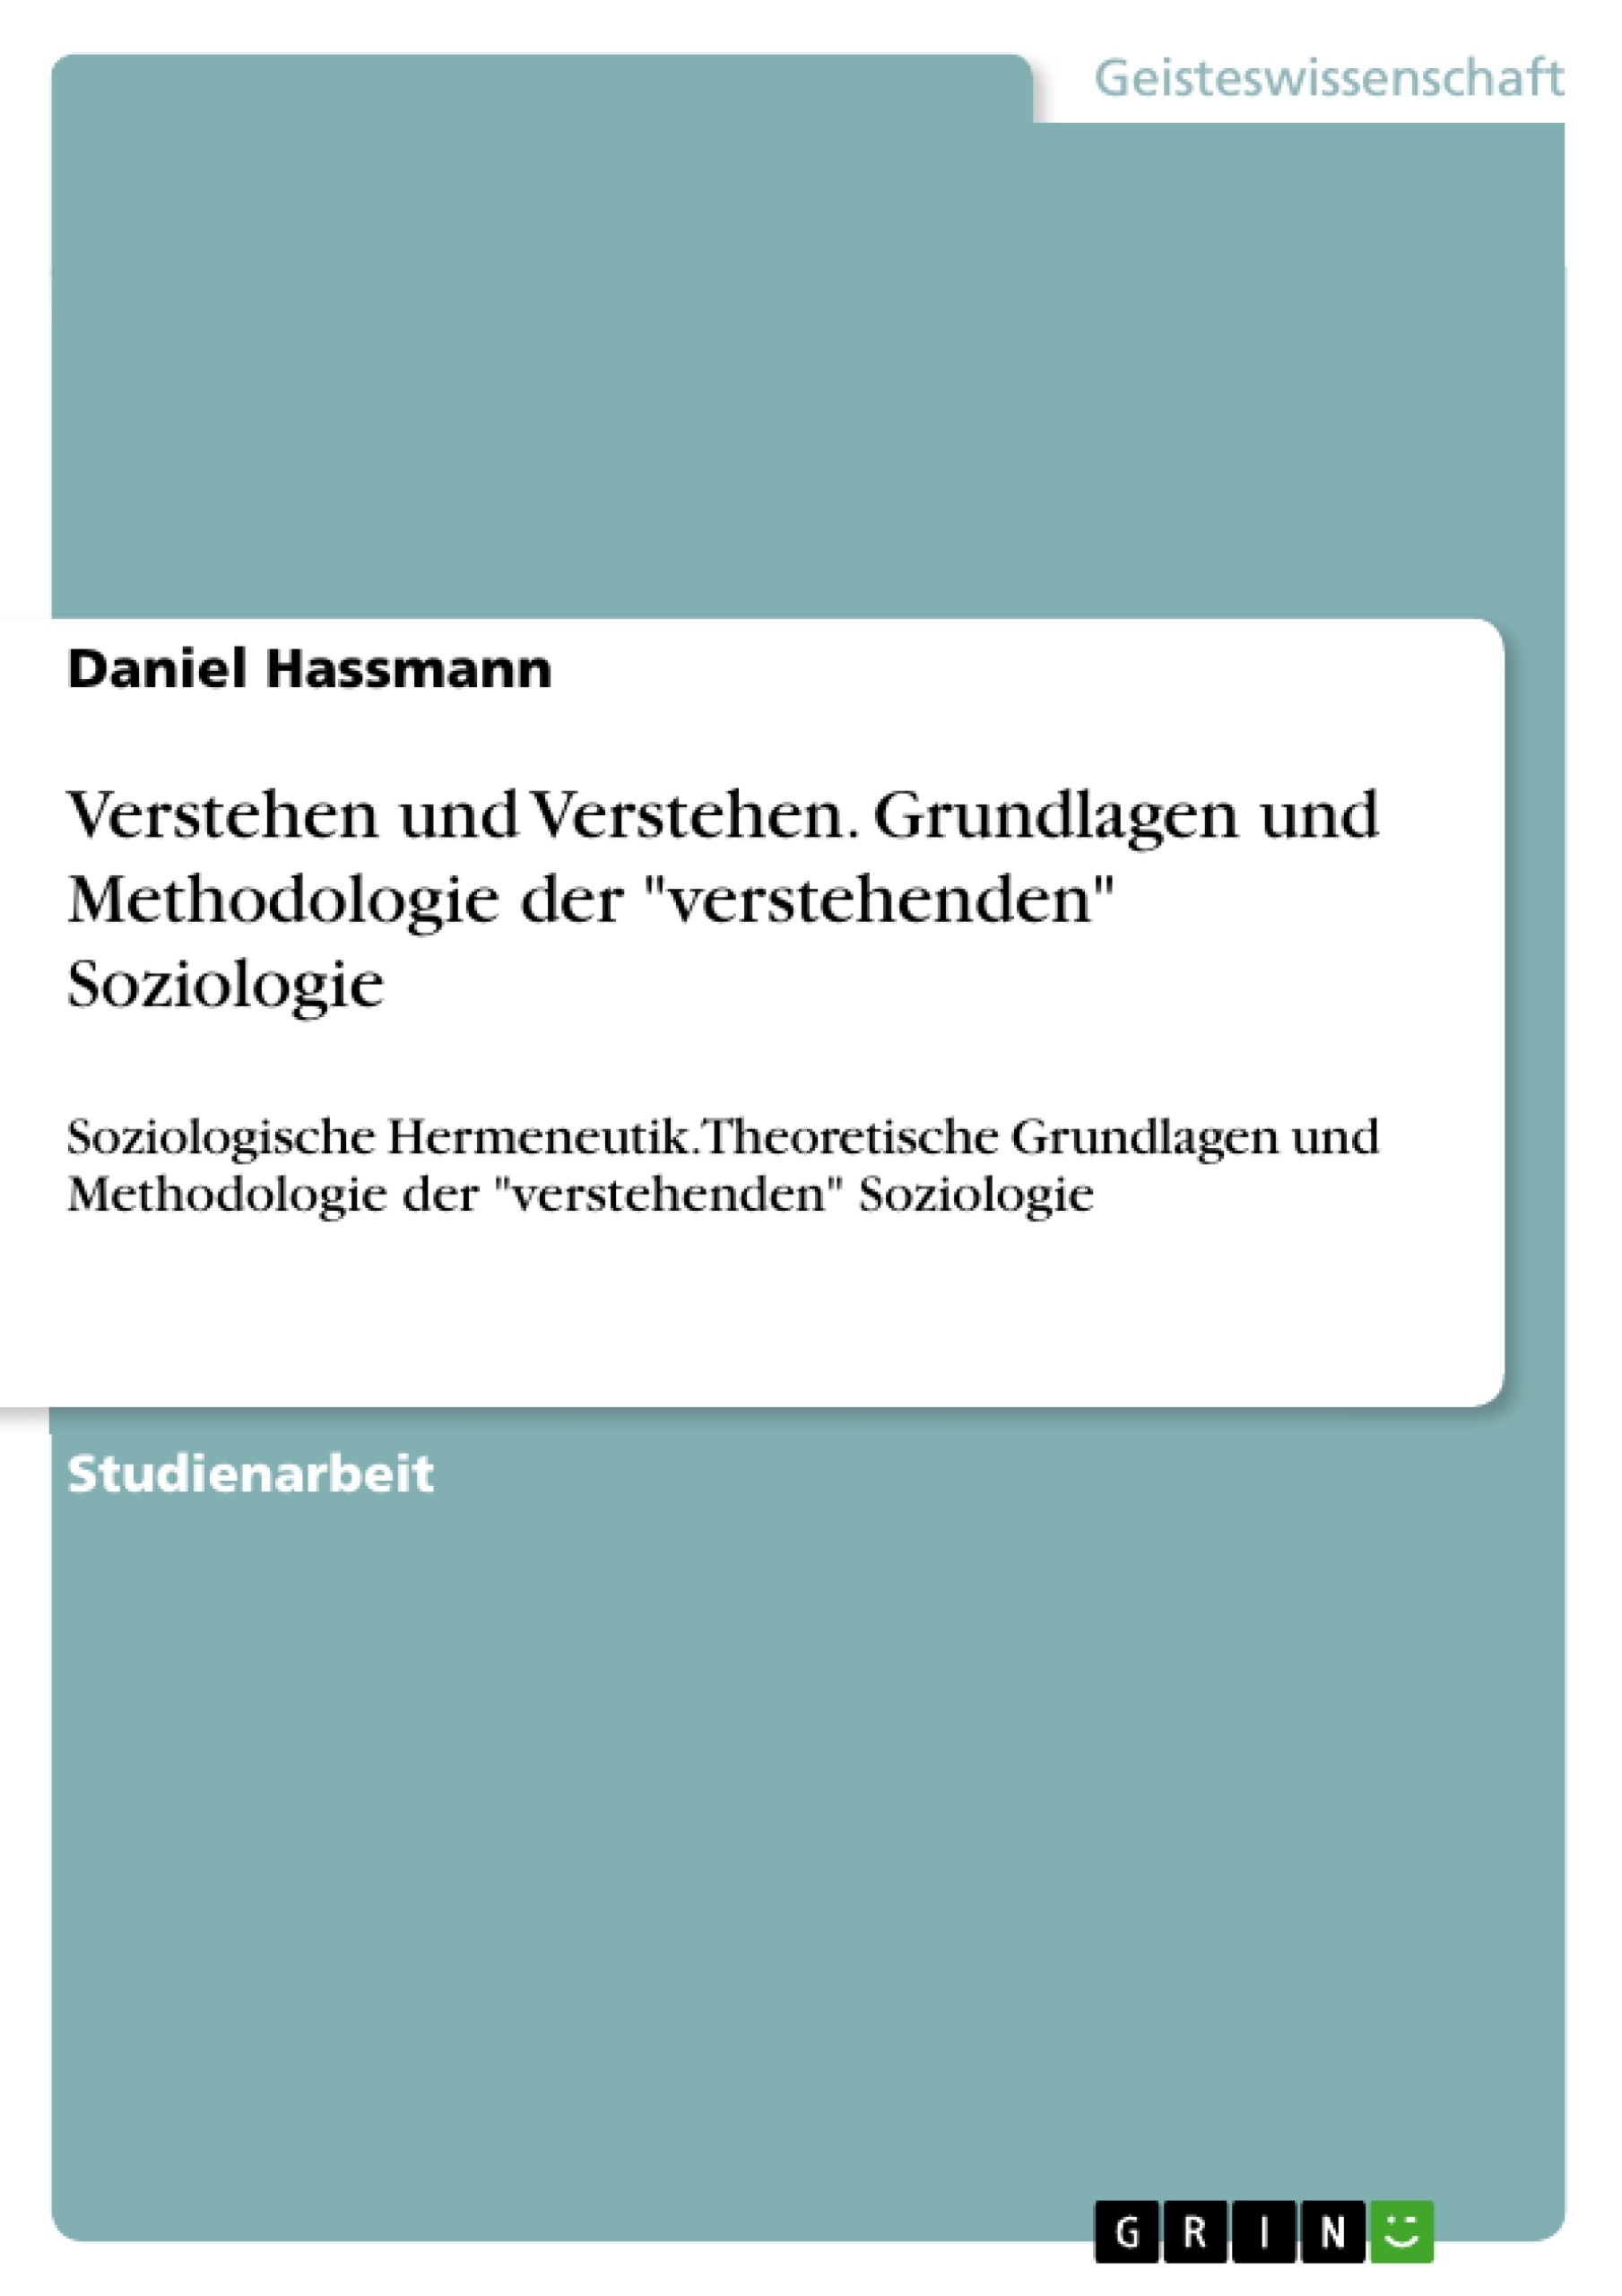 Título: Verstehen und Verstehen. Grundlagen und Methodologie der "verstehenden" Soziologie